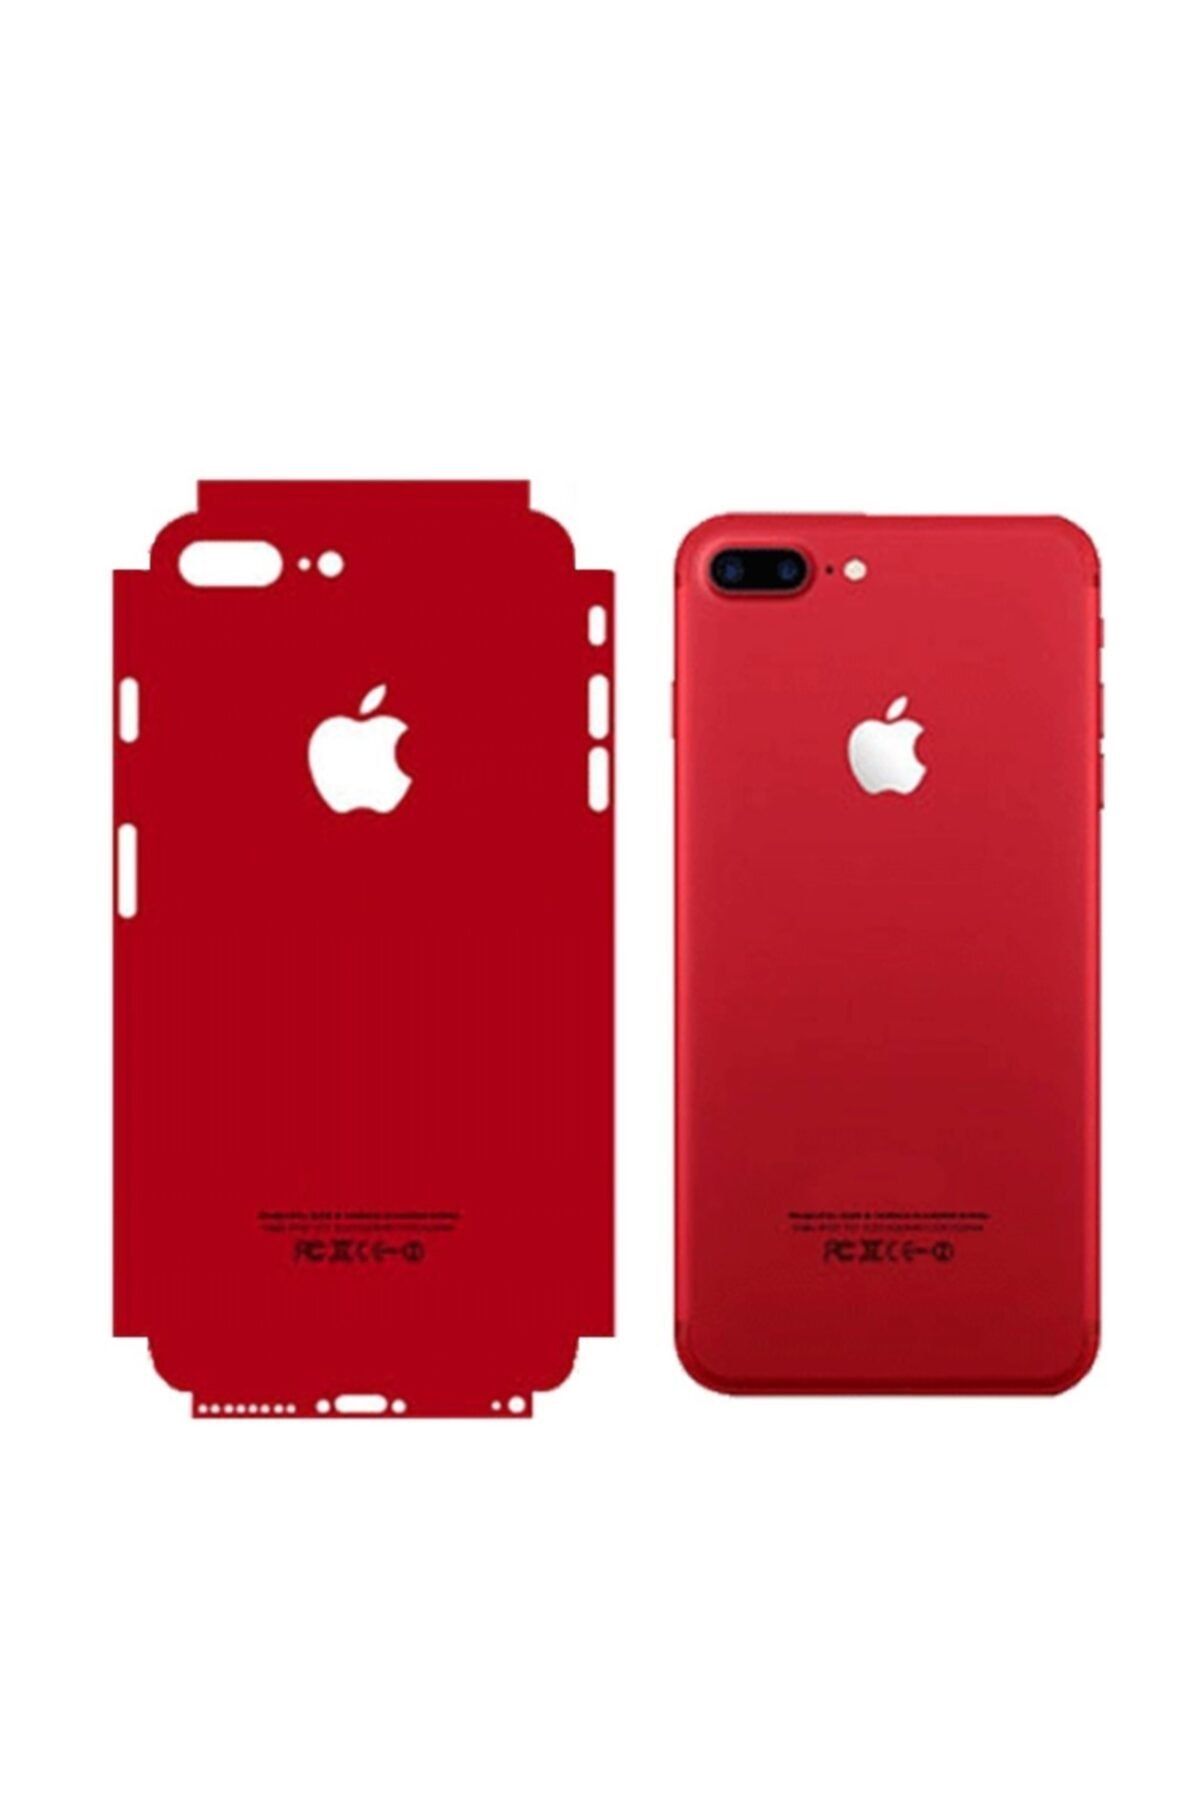 BCA Apple Iphone 6 Renkli Arka Ve Yan Koruma Jelatin Sticker Kaplama Film